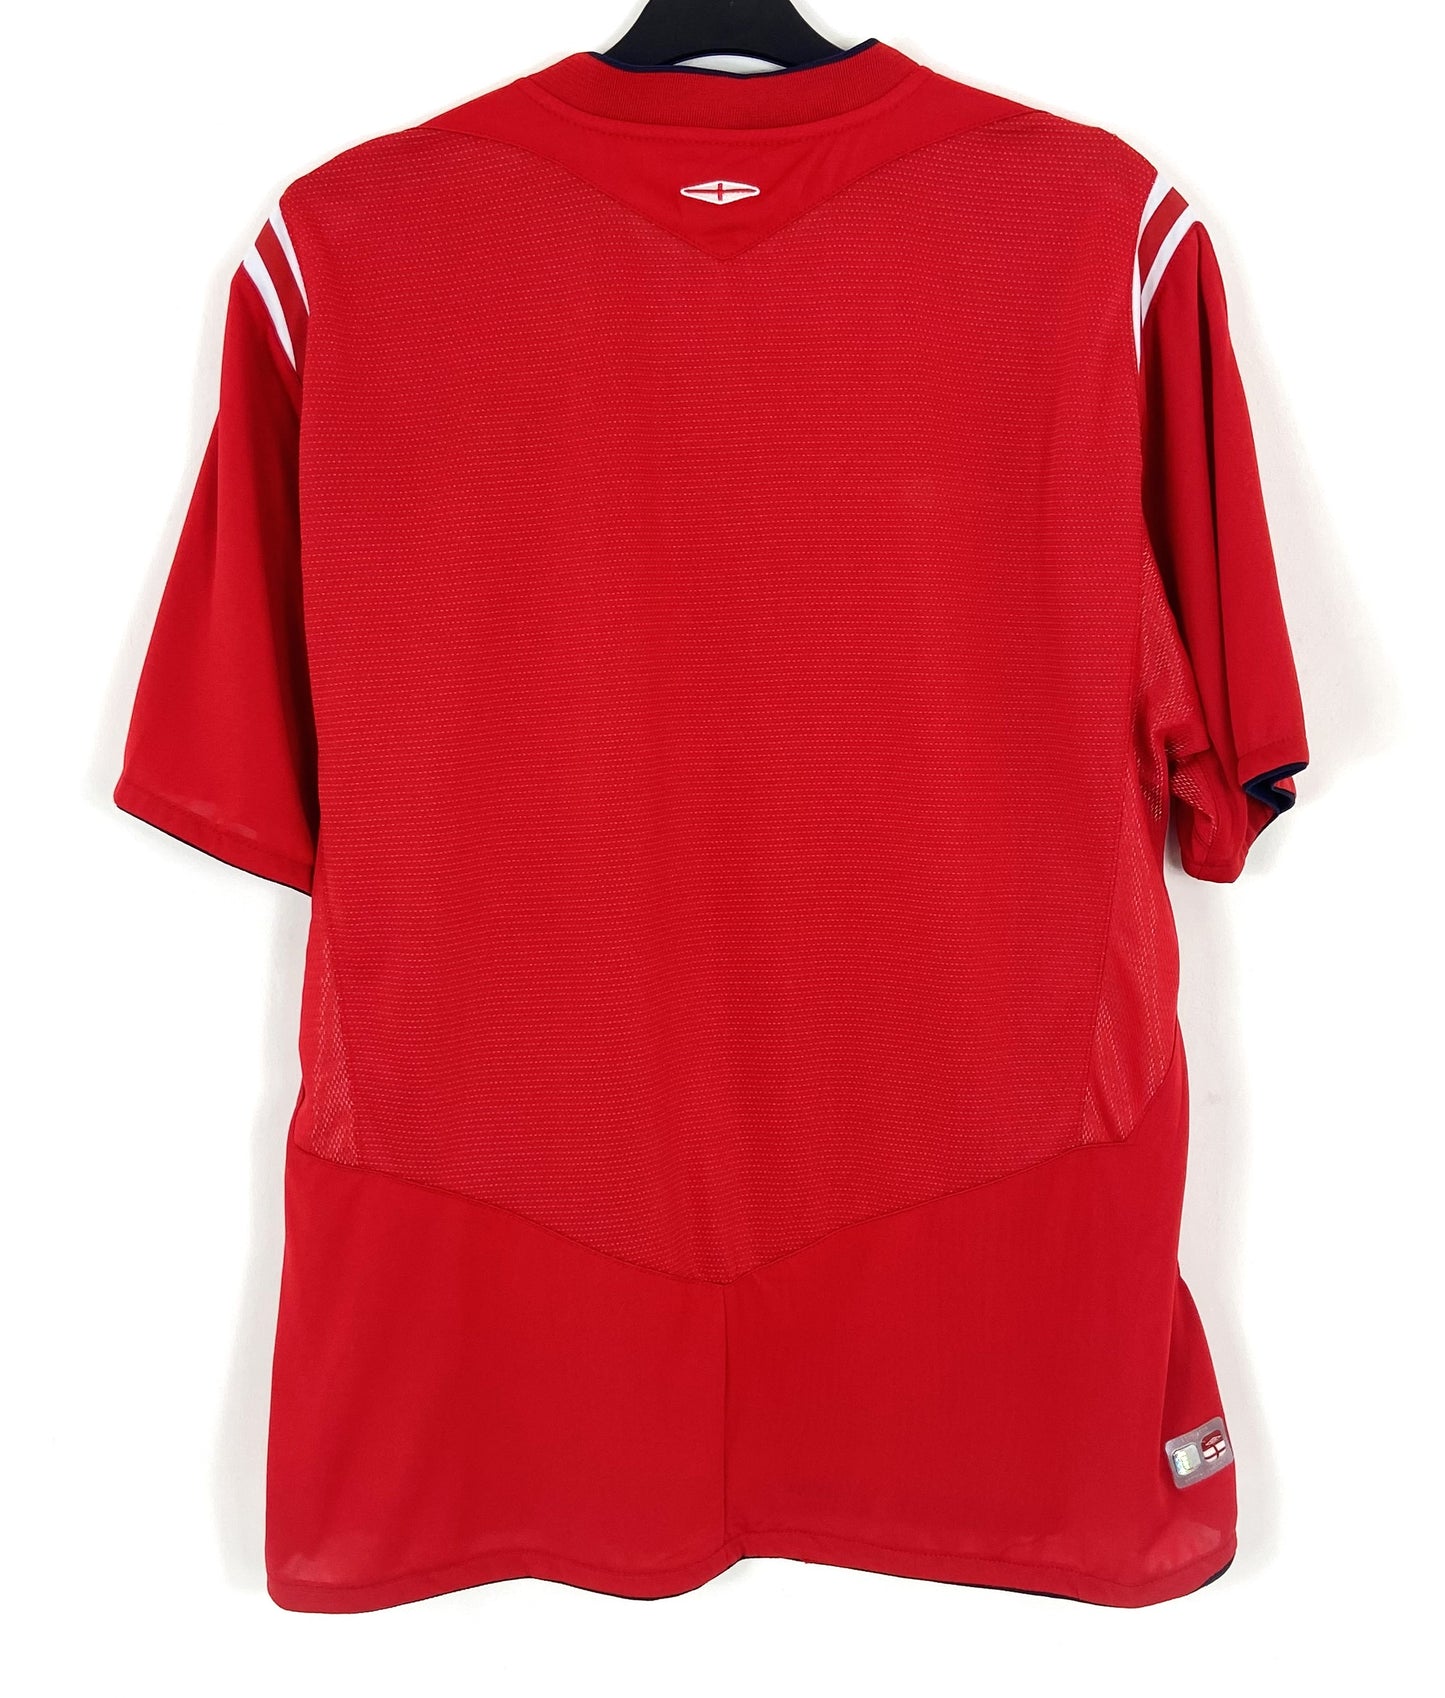 2004 2006 England Umbro Away Football Shirt Men's XL